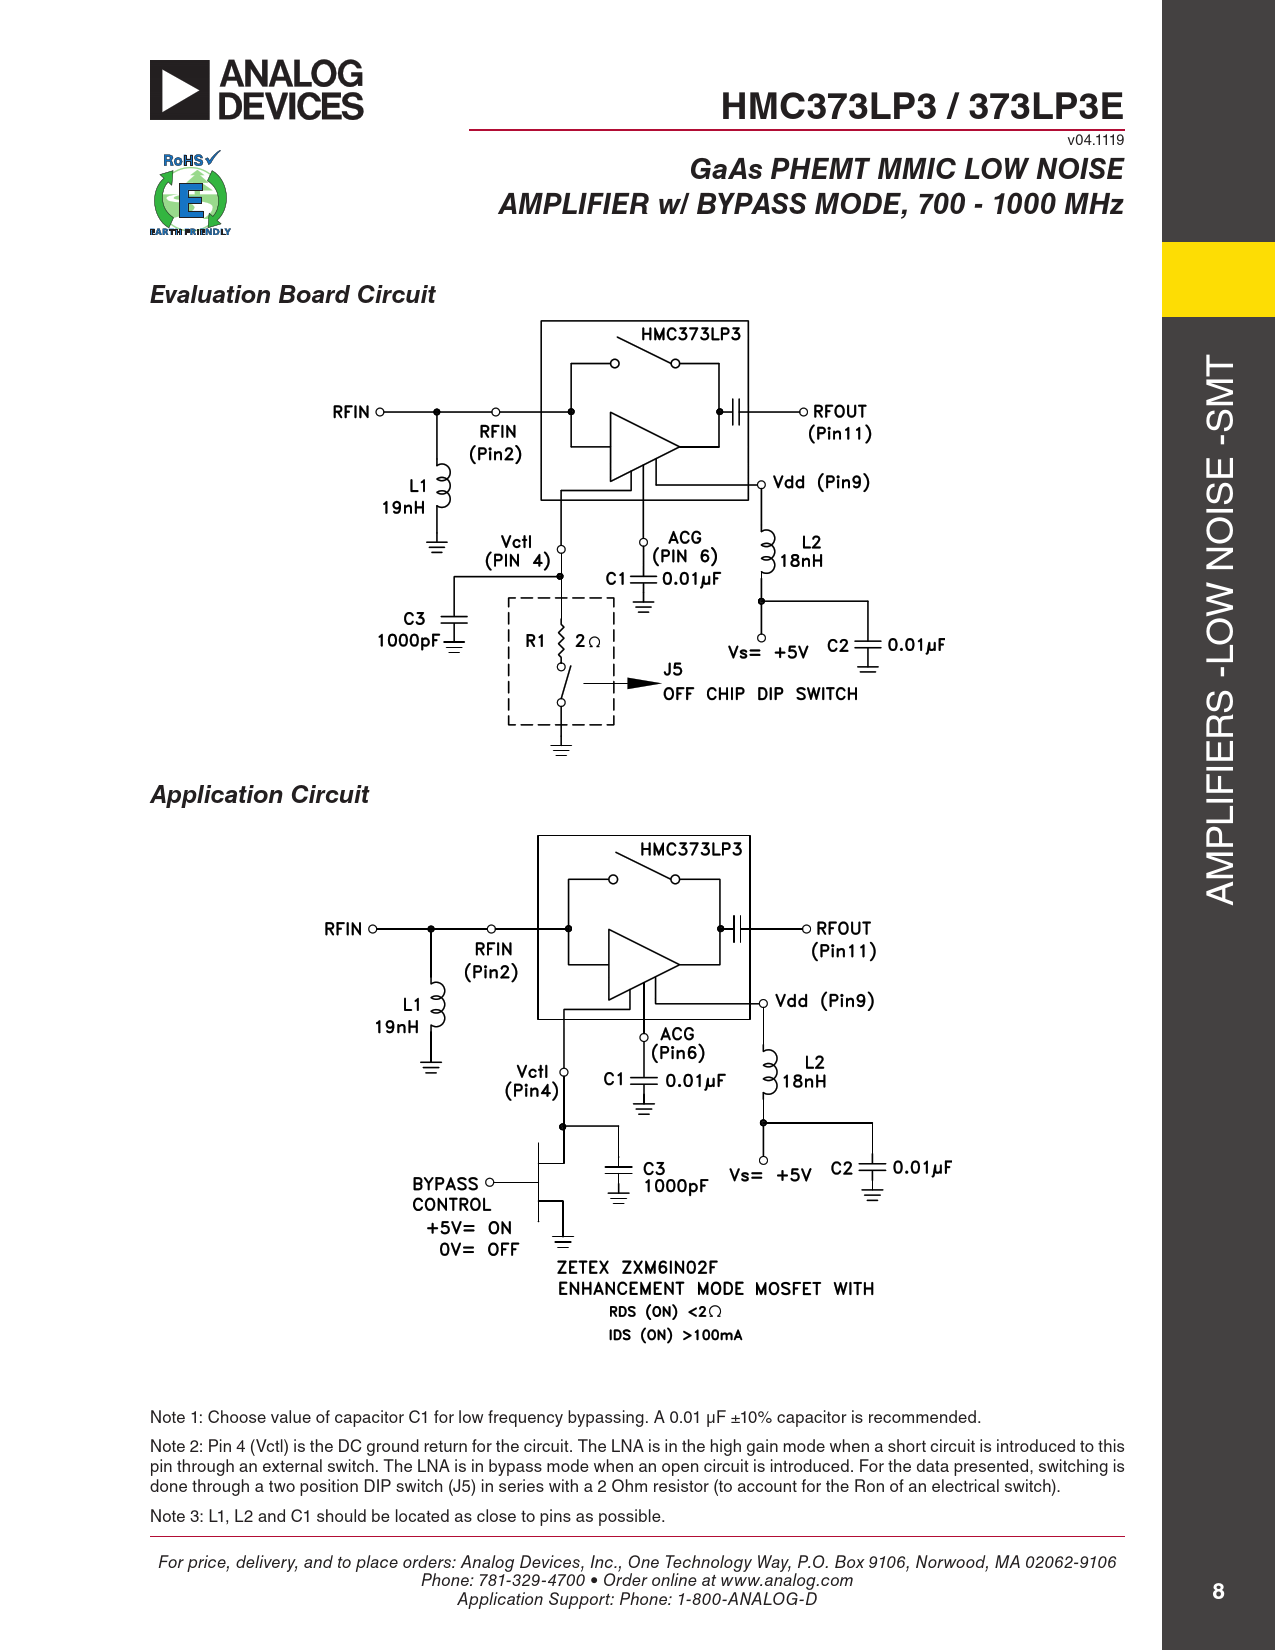 HMC373LP3 / 373LP3E GaAs PHEMT MMIC LOW NOISE AMPLIFIER w/ BYPASS MODE, 700 - 1000 MHz Evaluation Board Circuit